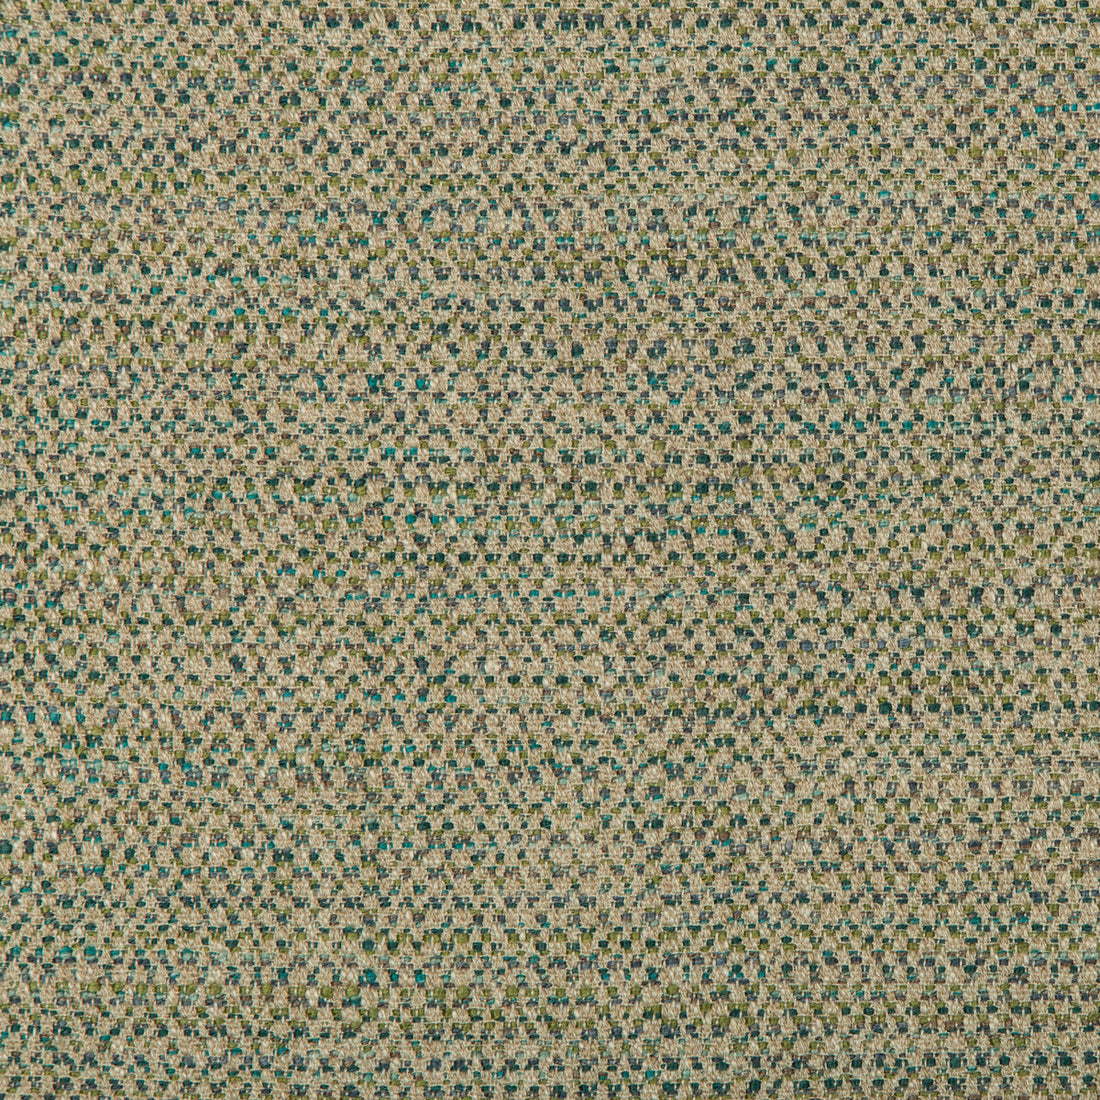 Kravet Design fabric in 35611-35 color - pattern 35611.35.0 - by Kravet Design